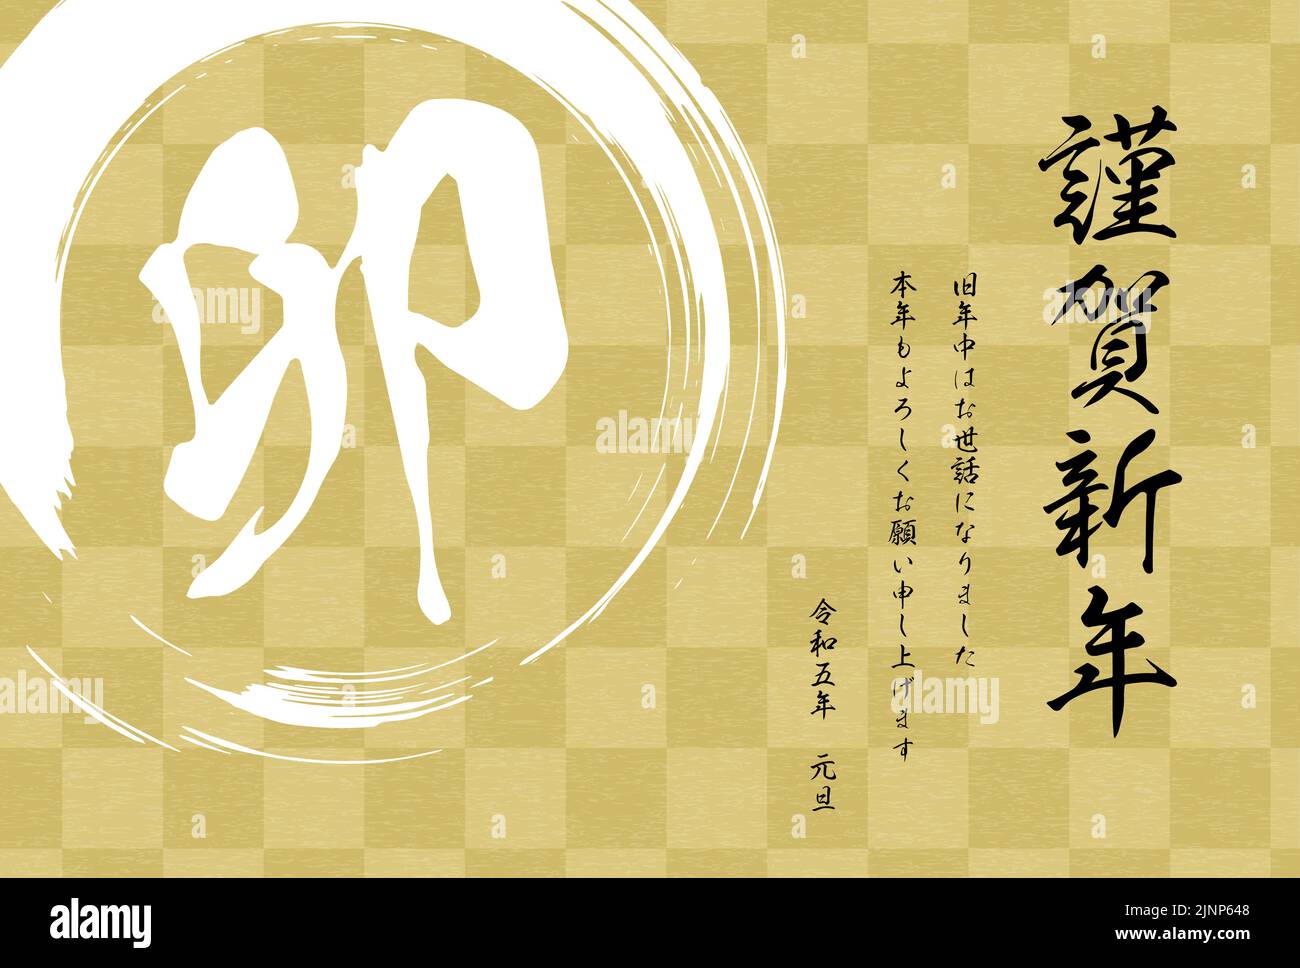 Carta di Capodanno in stile giapponese per l'anno del coniglio, scacchiera e pennello - traduzione: Felice anno nuovo, grazie ancora quest'anno. Rei Illustrazione Vettoriale